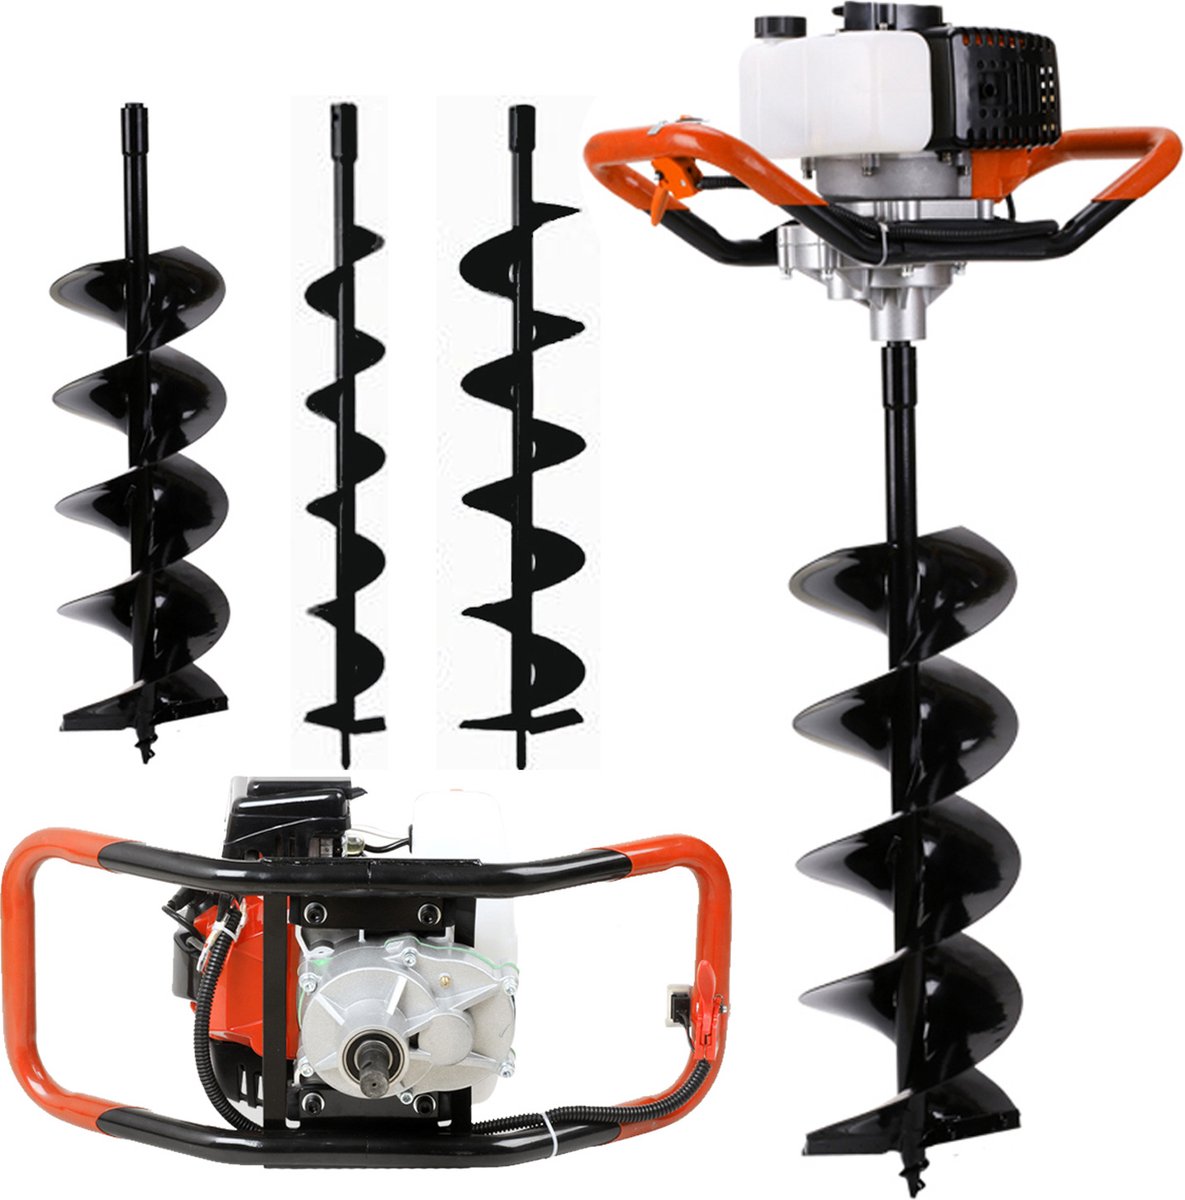 Herzberg - Grond boor - Graafmachine - Zwart - Oranje - Herzberg Professional Tools